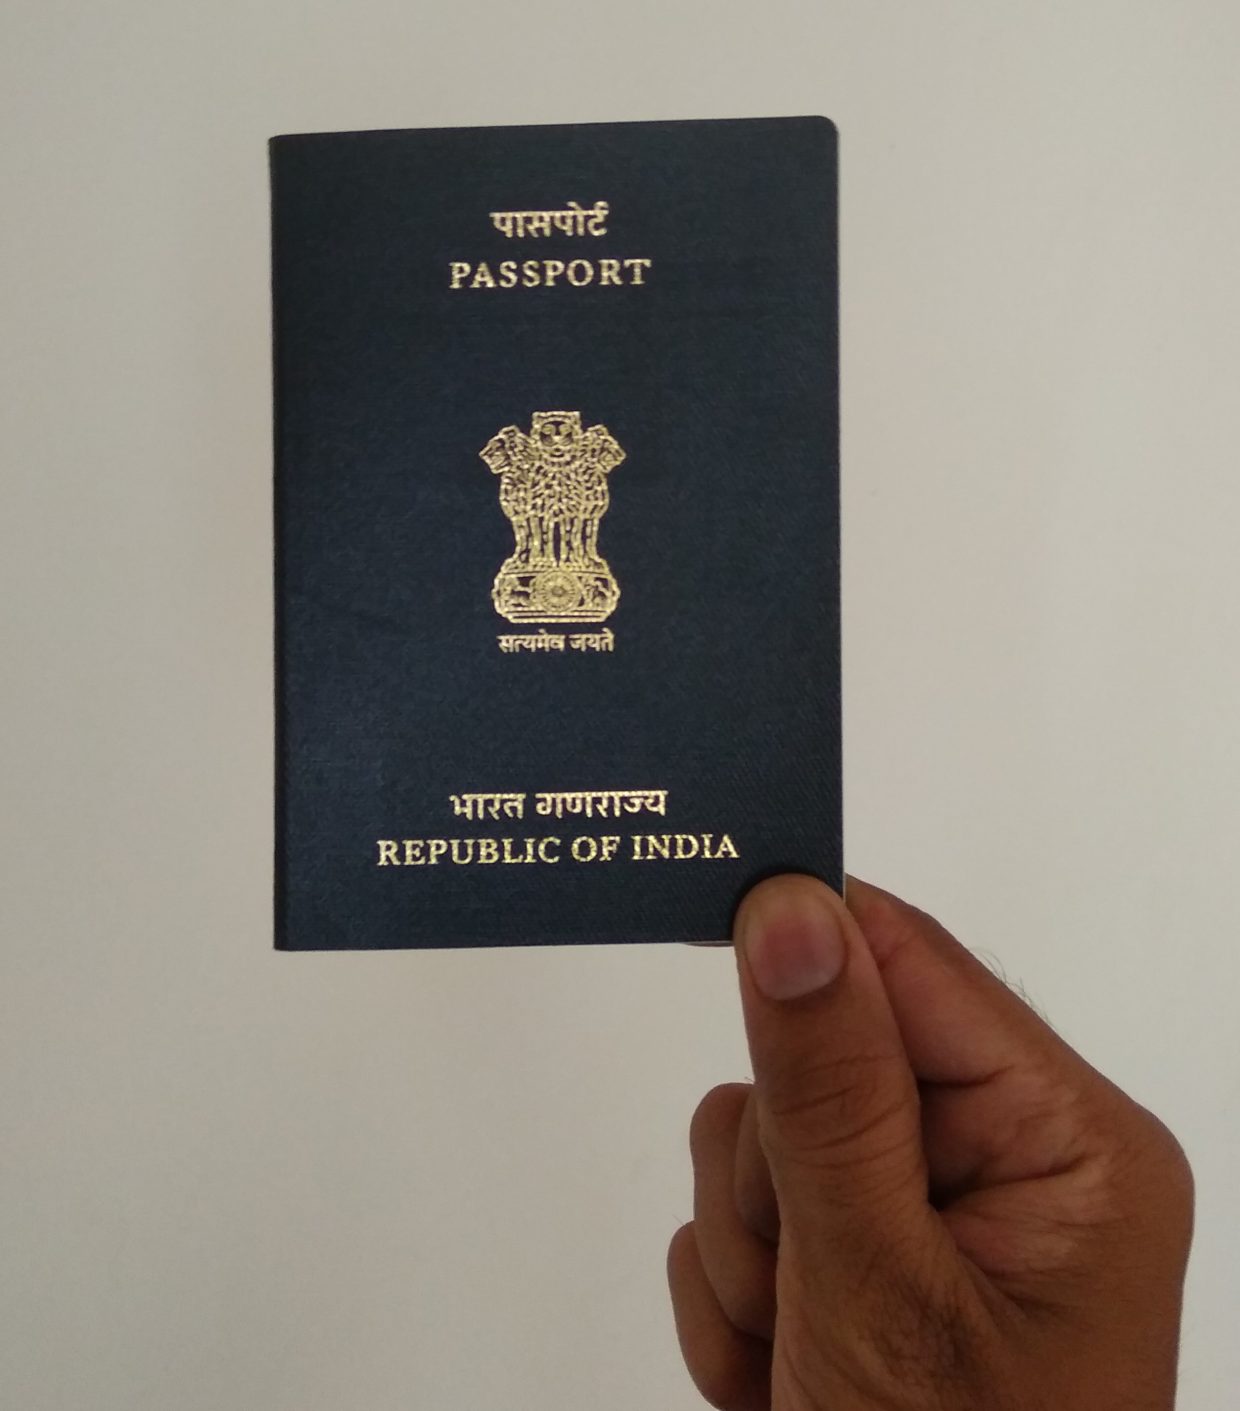 renew-indian-passport-in-easy-steps-atraveler